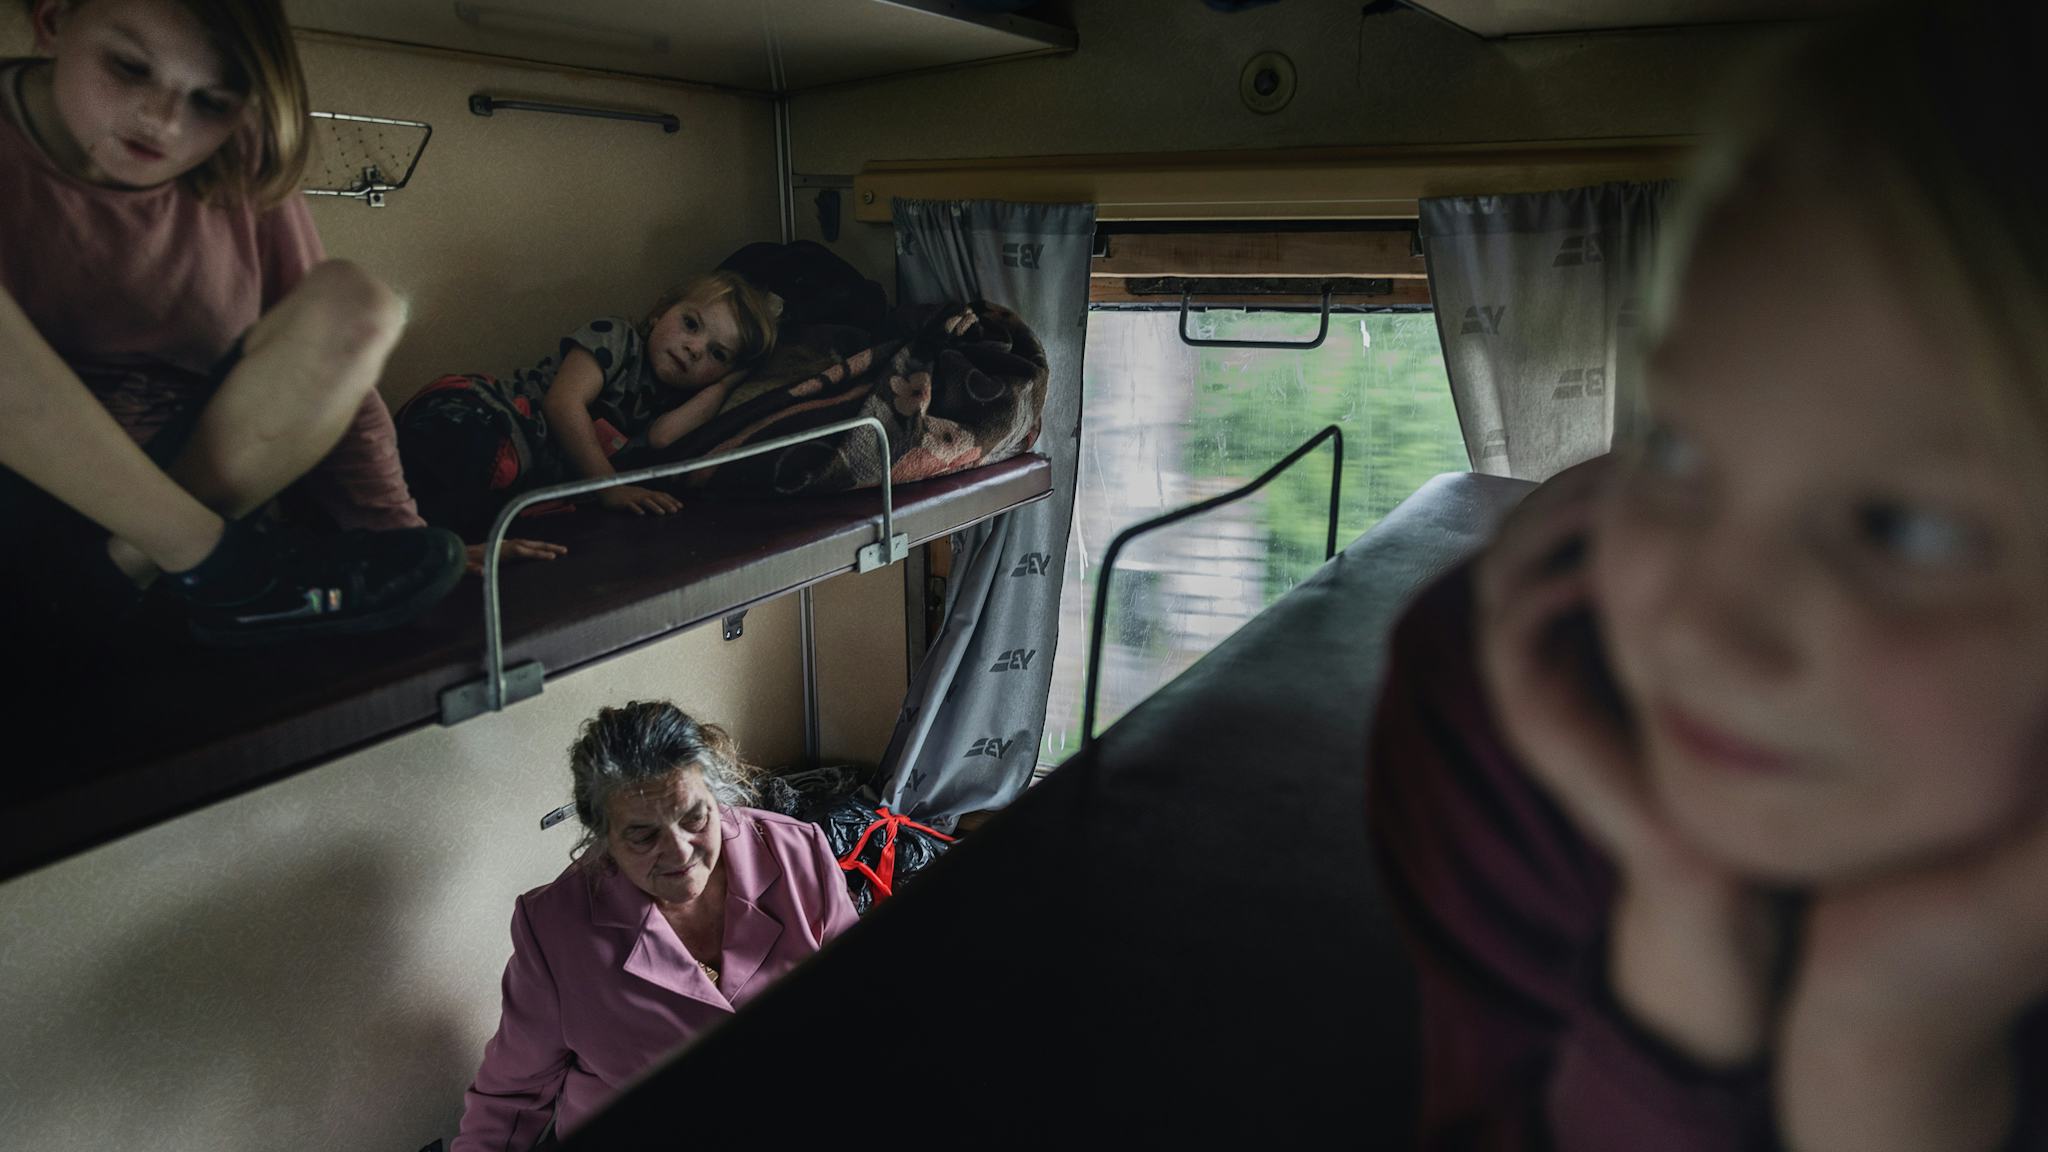 Tre blonda barn sitter på varsin överslaf i en tågkupé. På britsen nedtill syns en äldre gråhårig kvinna i Rosa kappa.